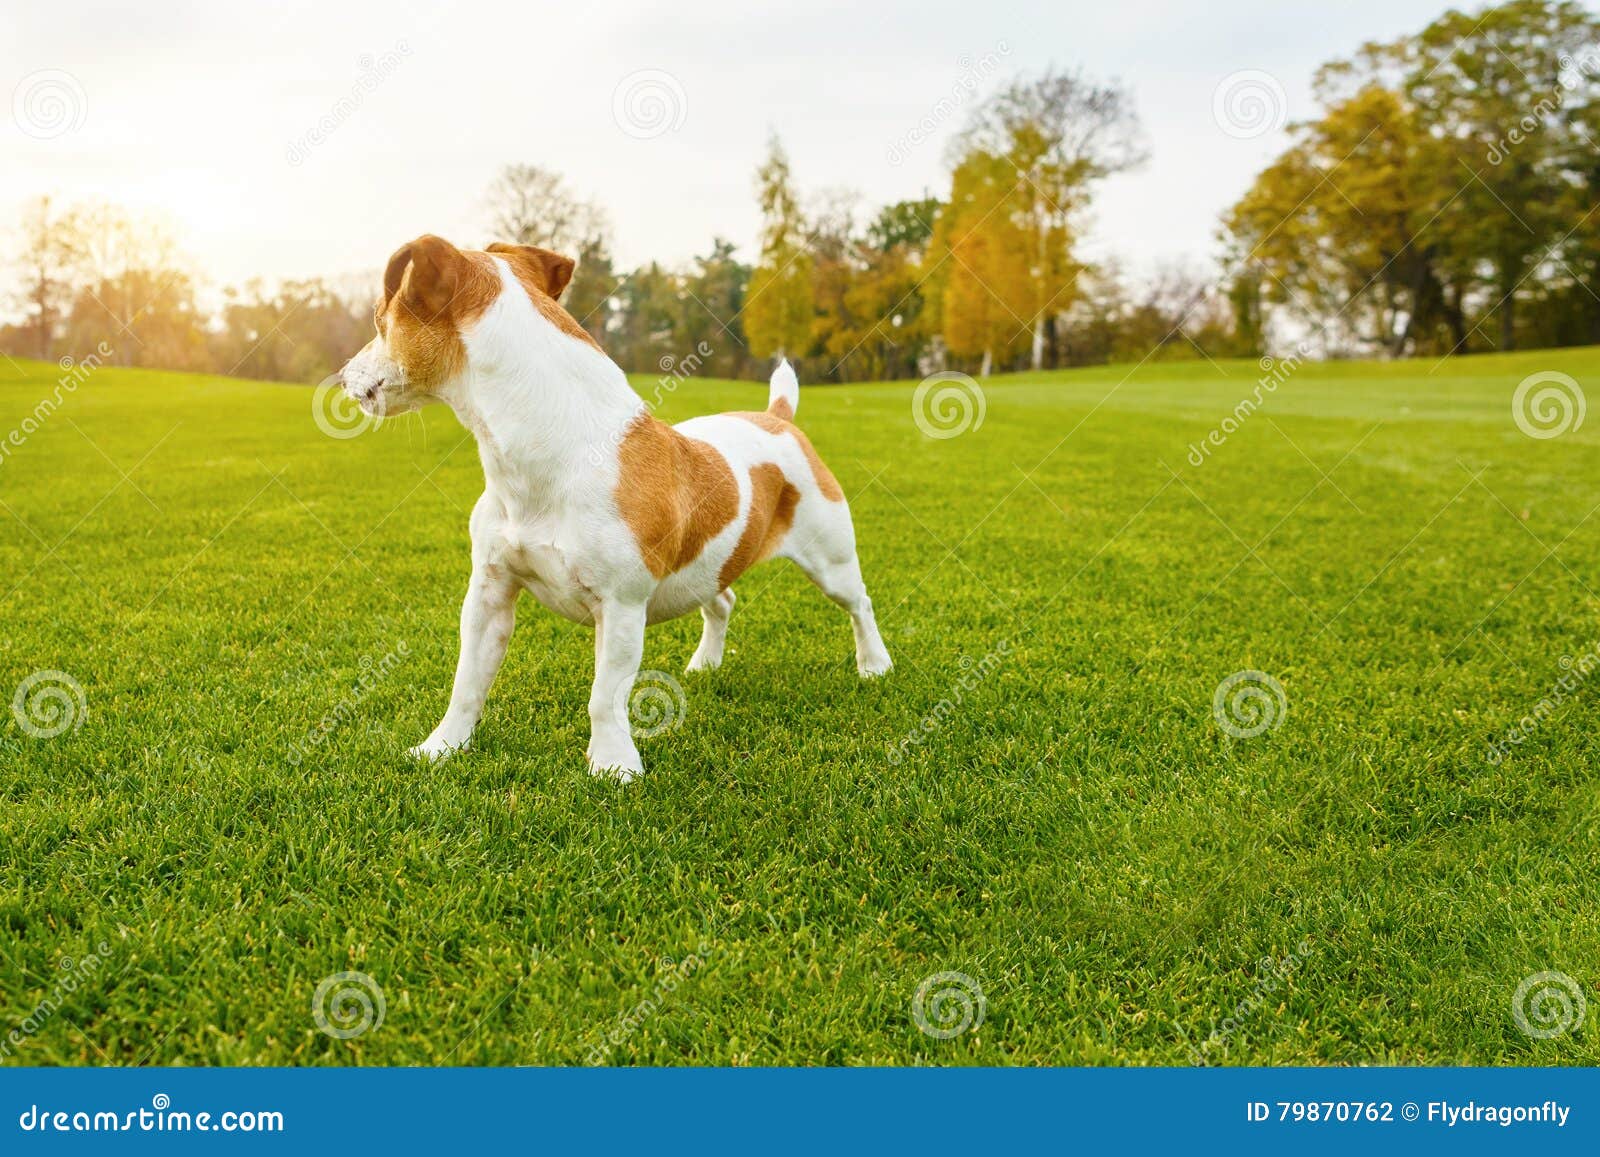 壁纸 狗正面图 2560x1600 HD 高清壁纸, 图片, 照片